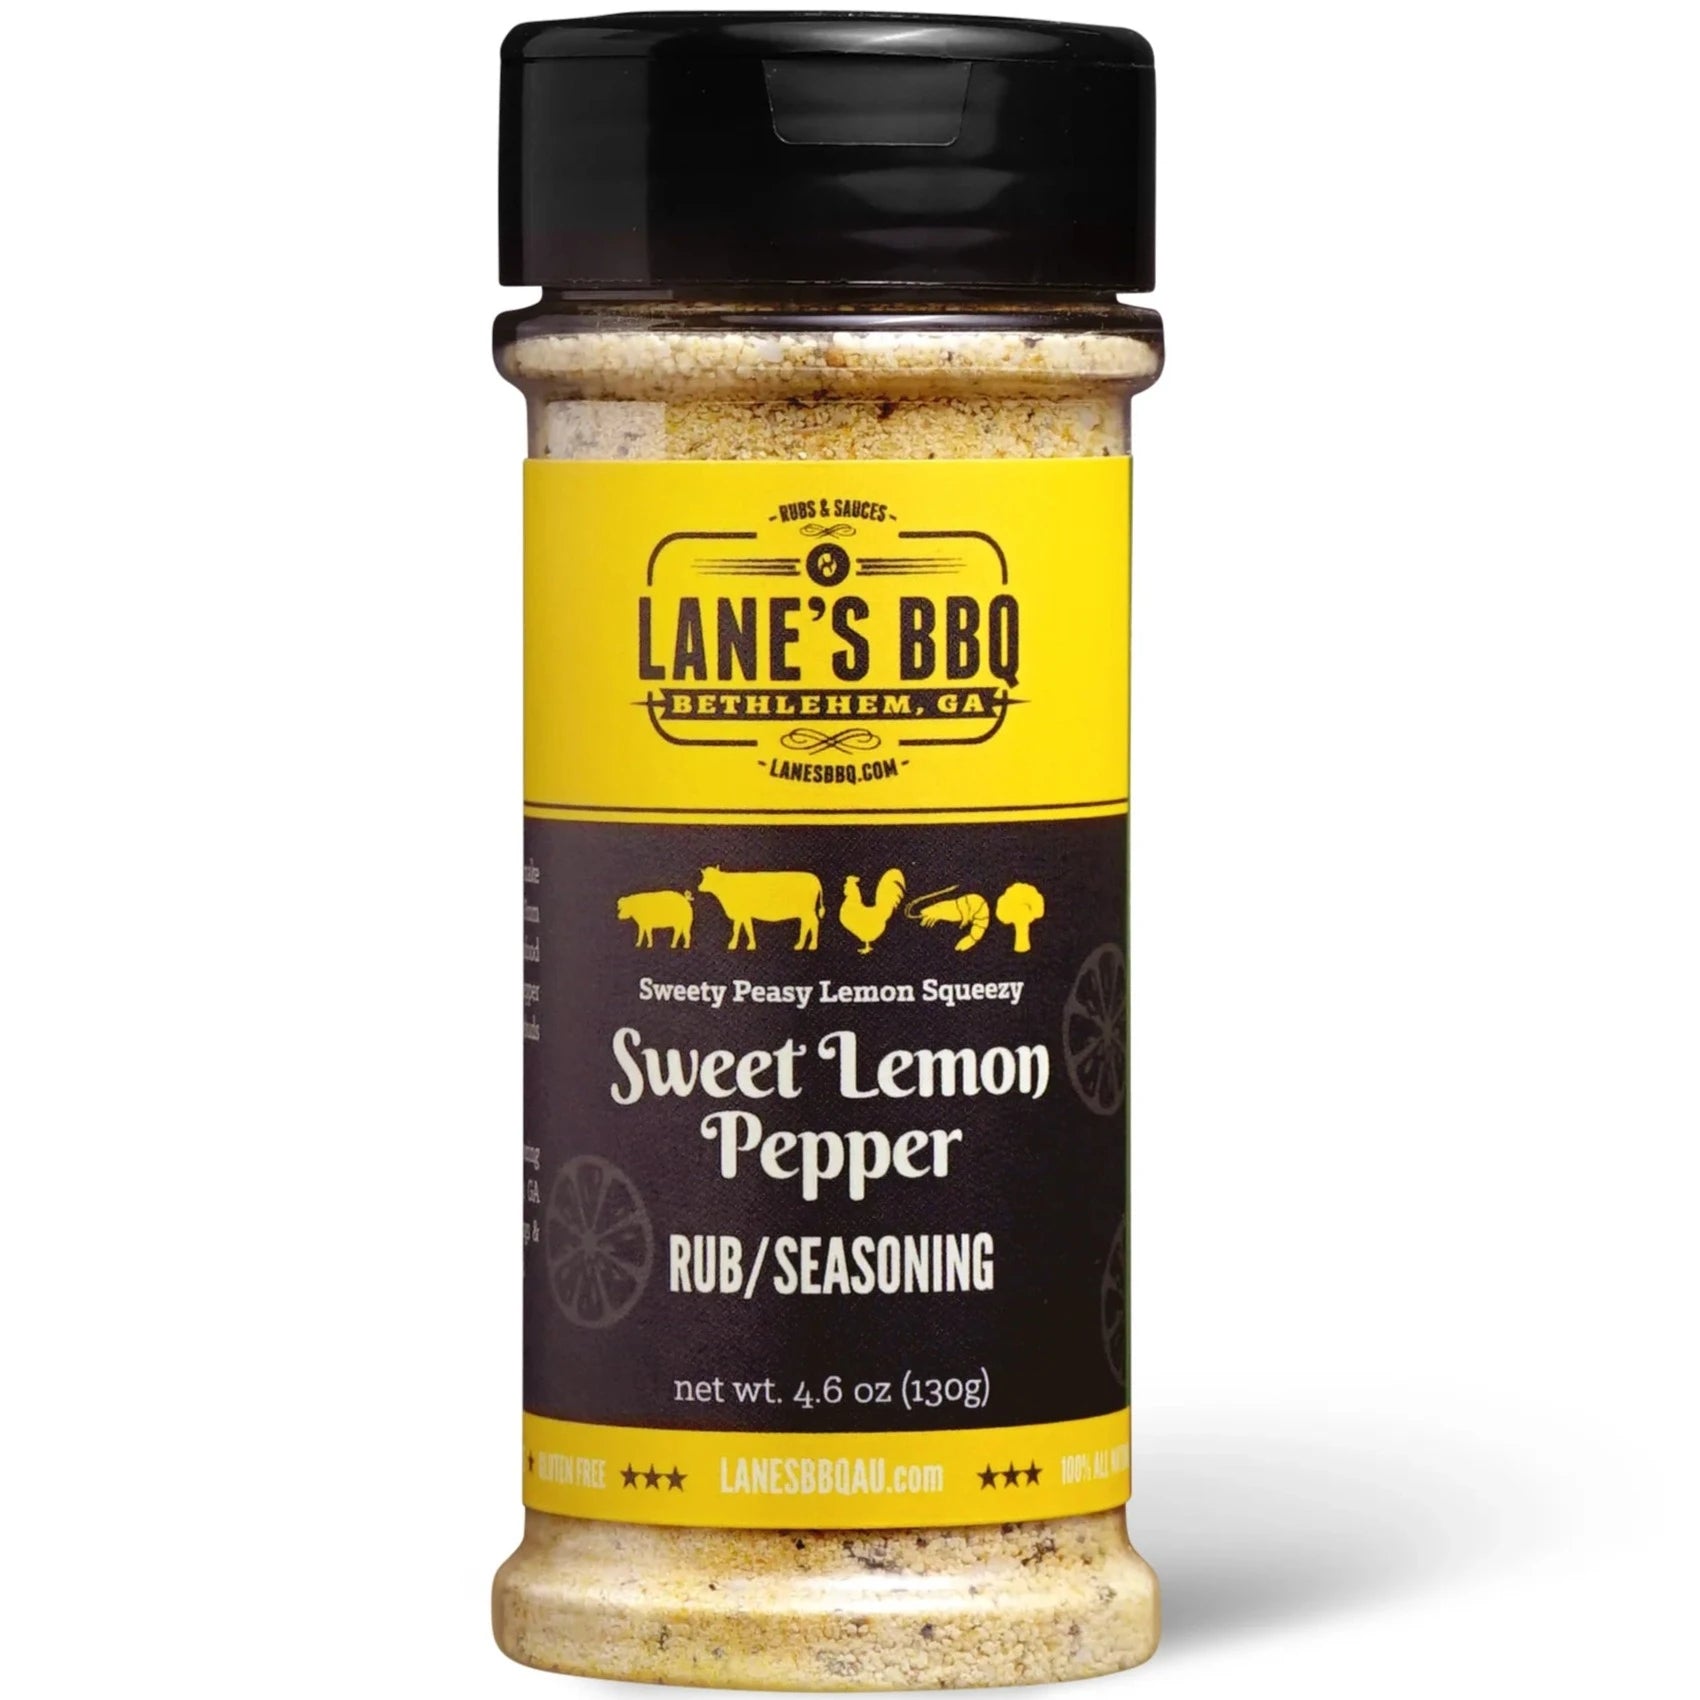 Lane's BBQ Sweet Lemon Pepper Rub